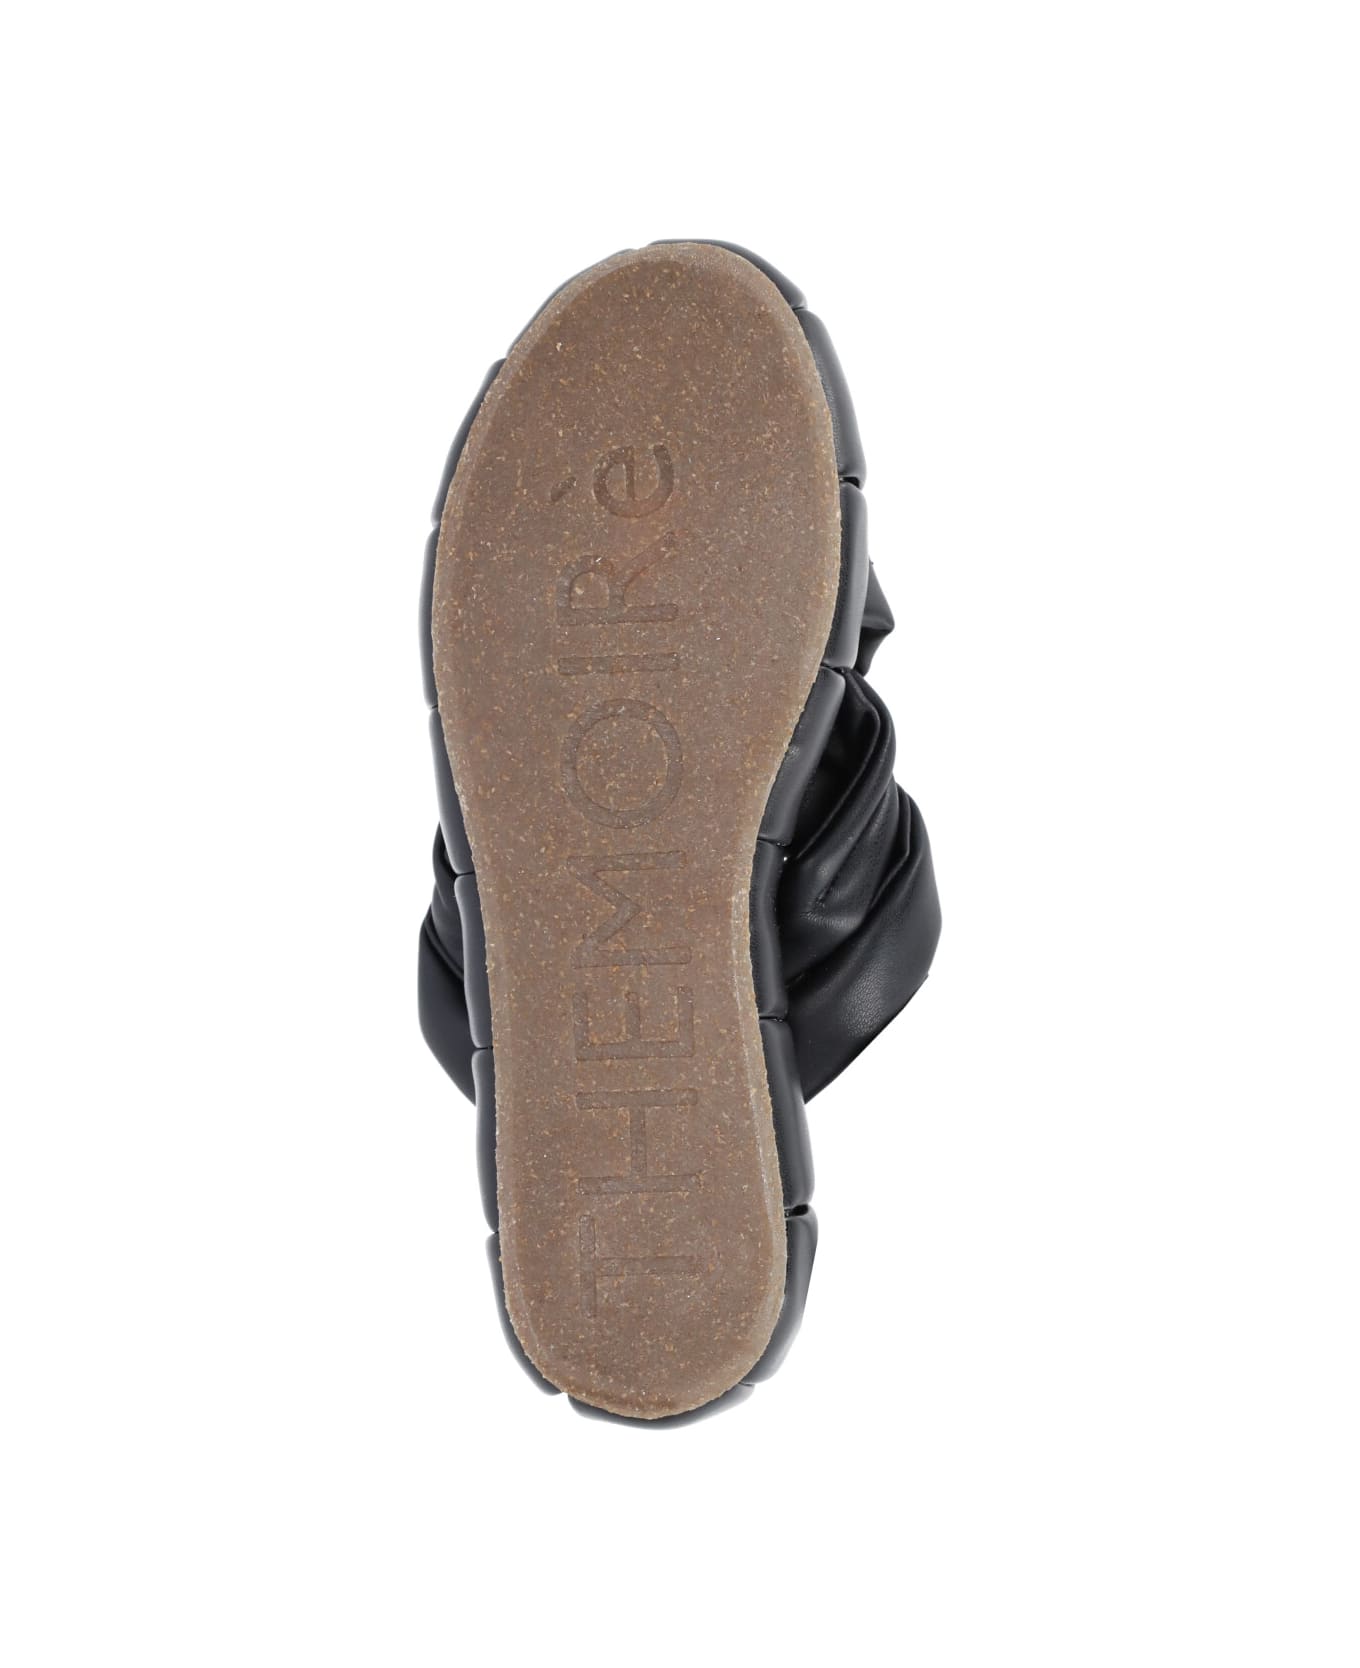 THEMOIRè Acquaria Platform Sandals - Black サンダル